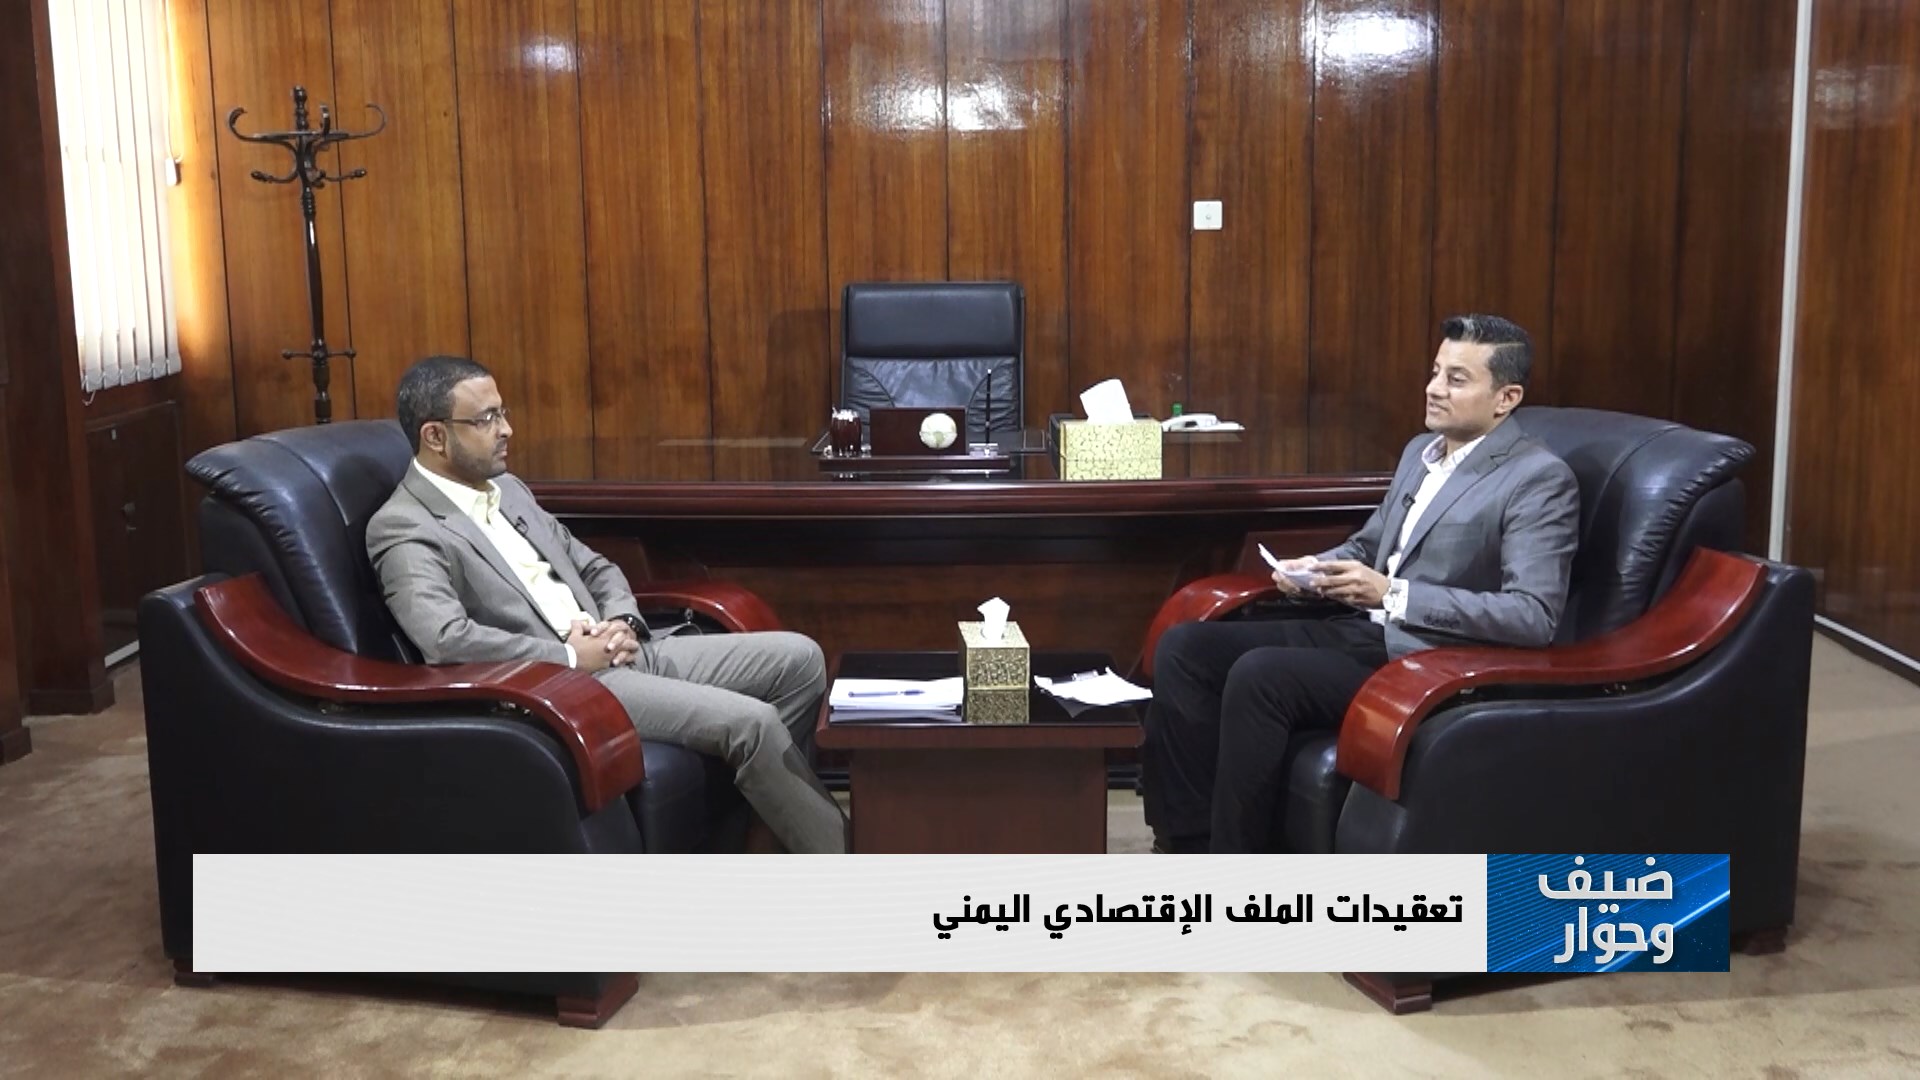 محافظ البنك المركزي اليمني يكشف للعالم من يقف وراء تدمير اقتصاد بلاده